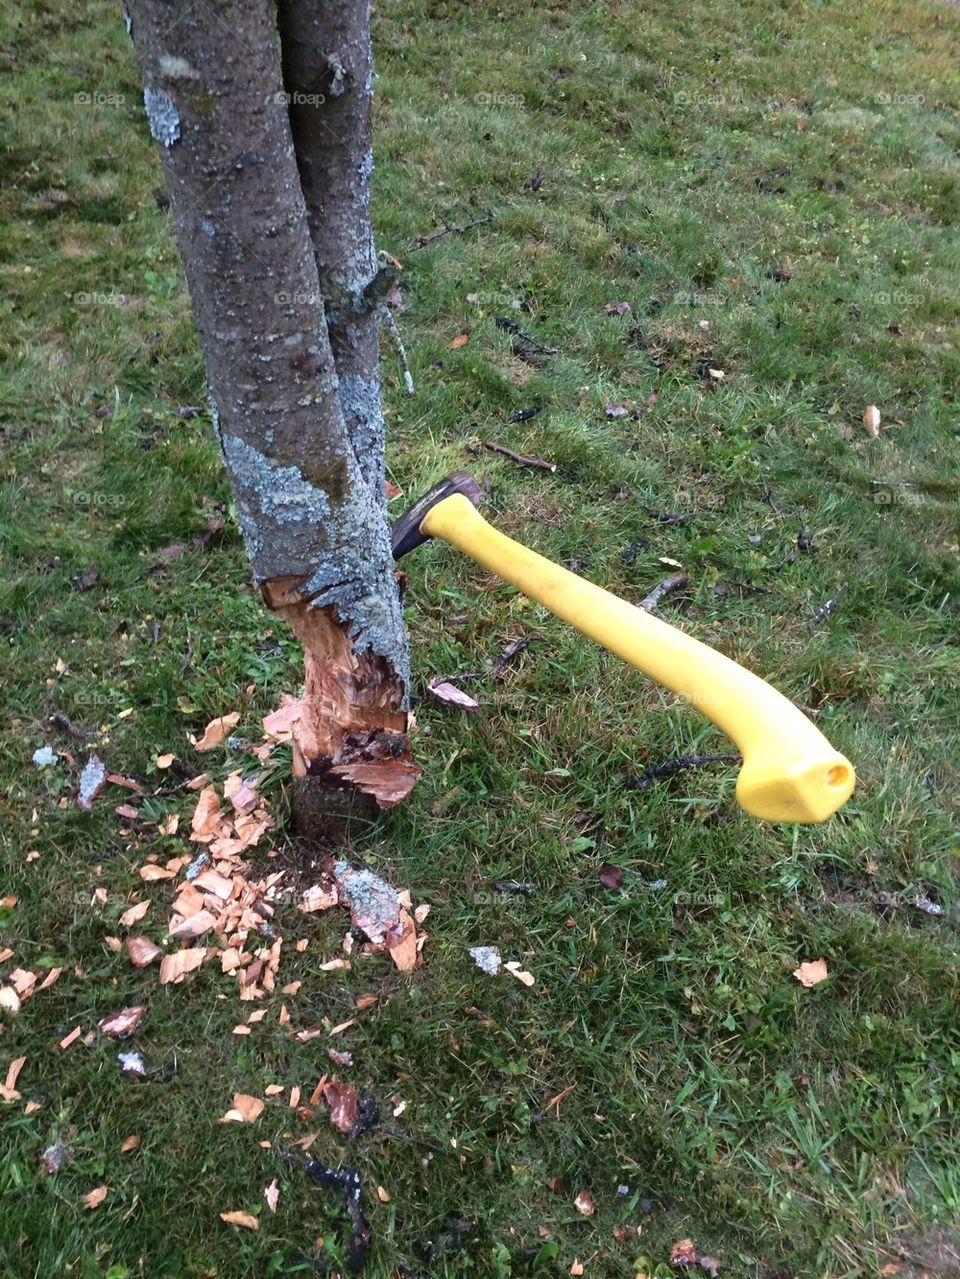 Chopping down a tree